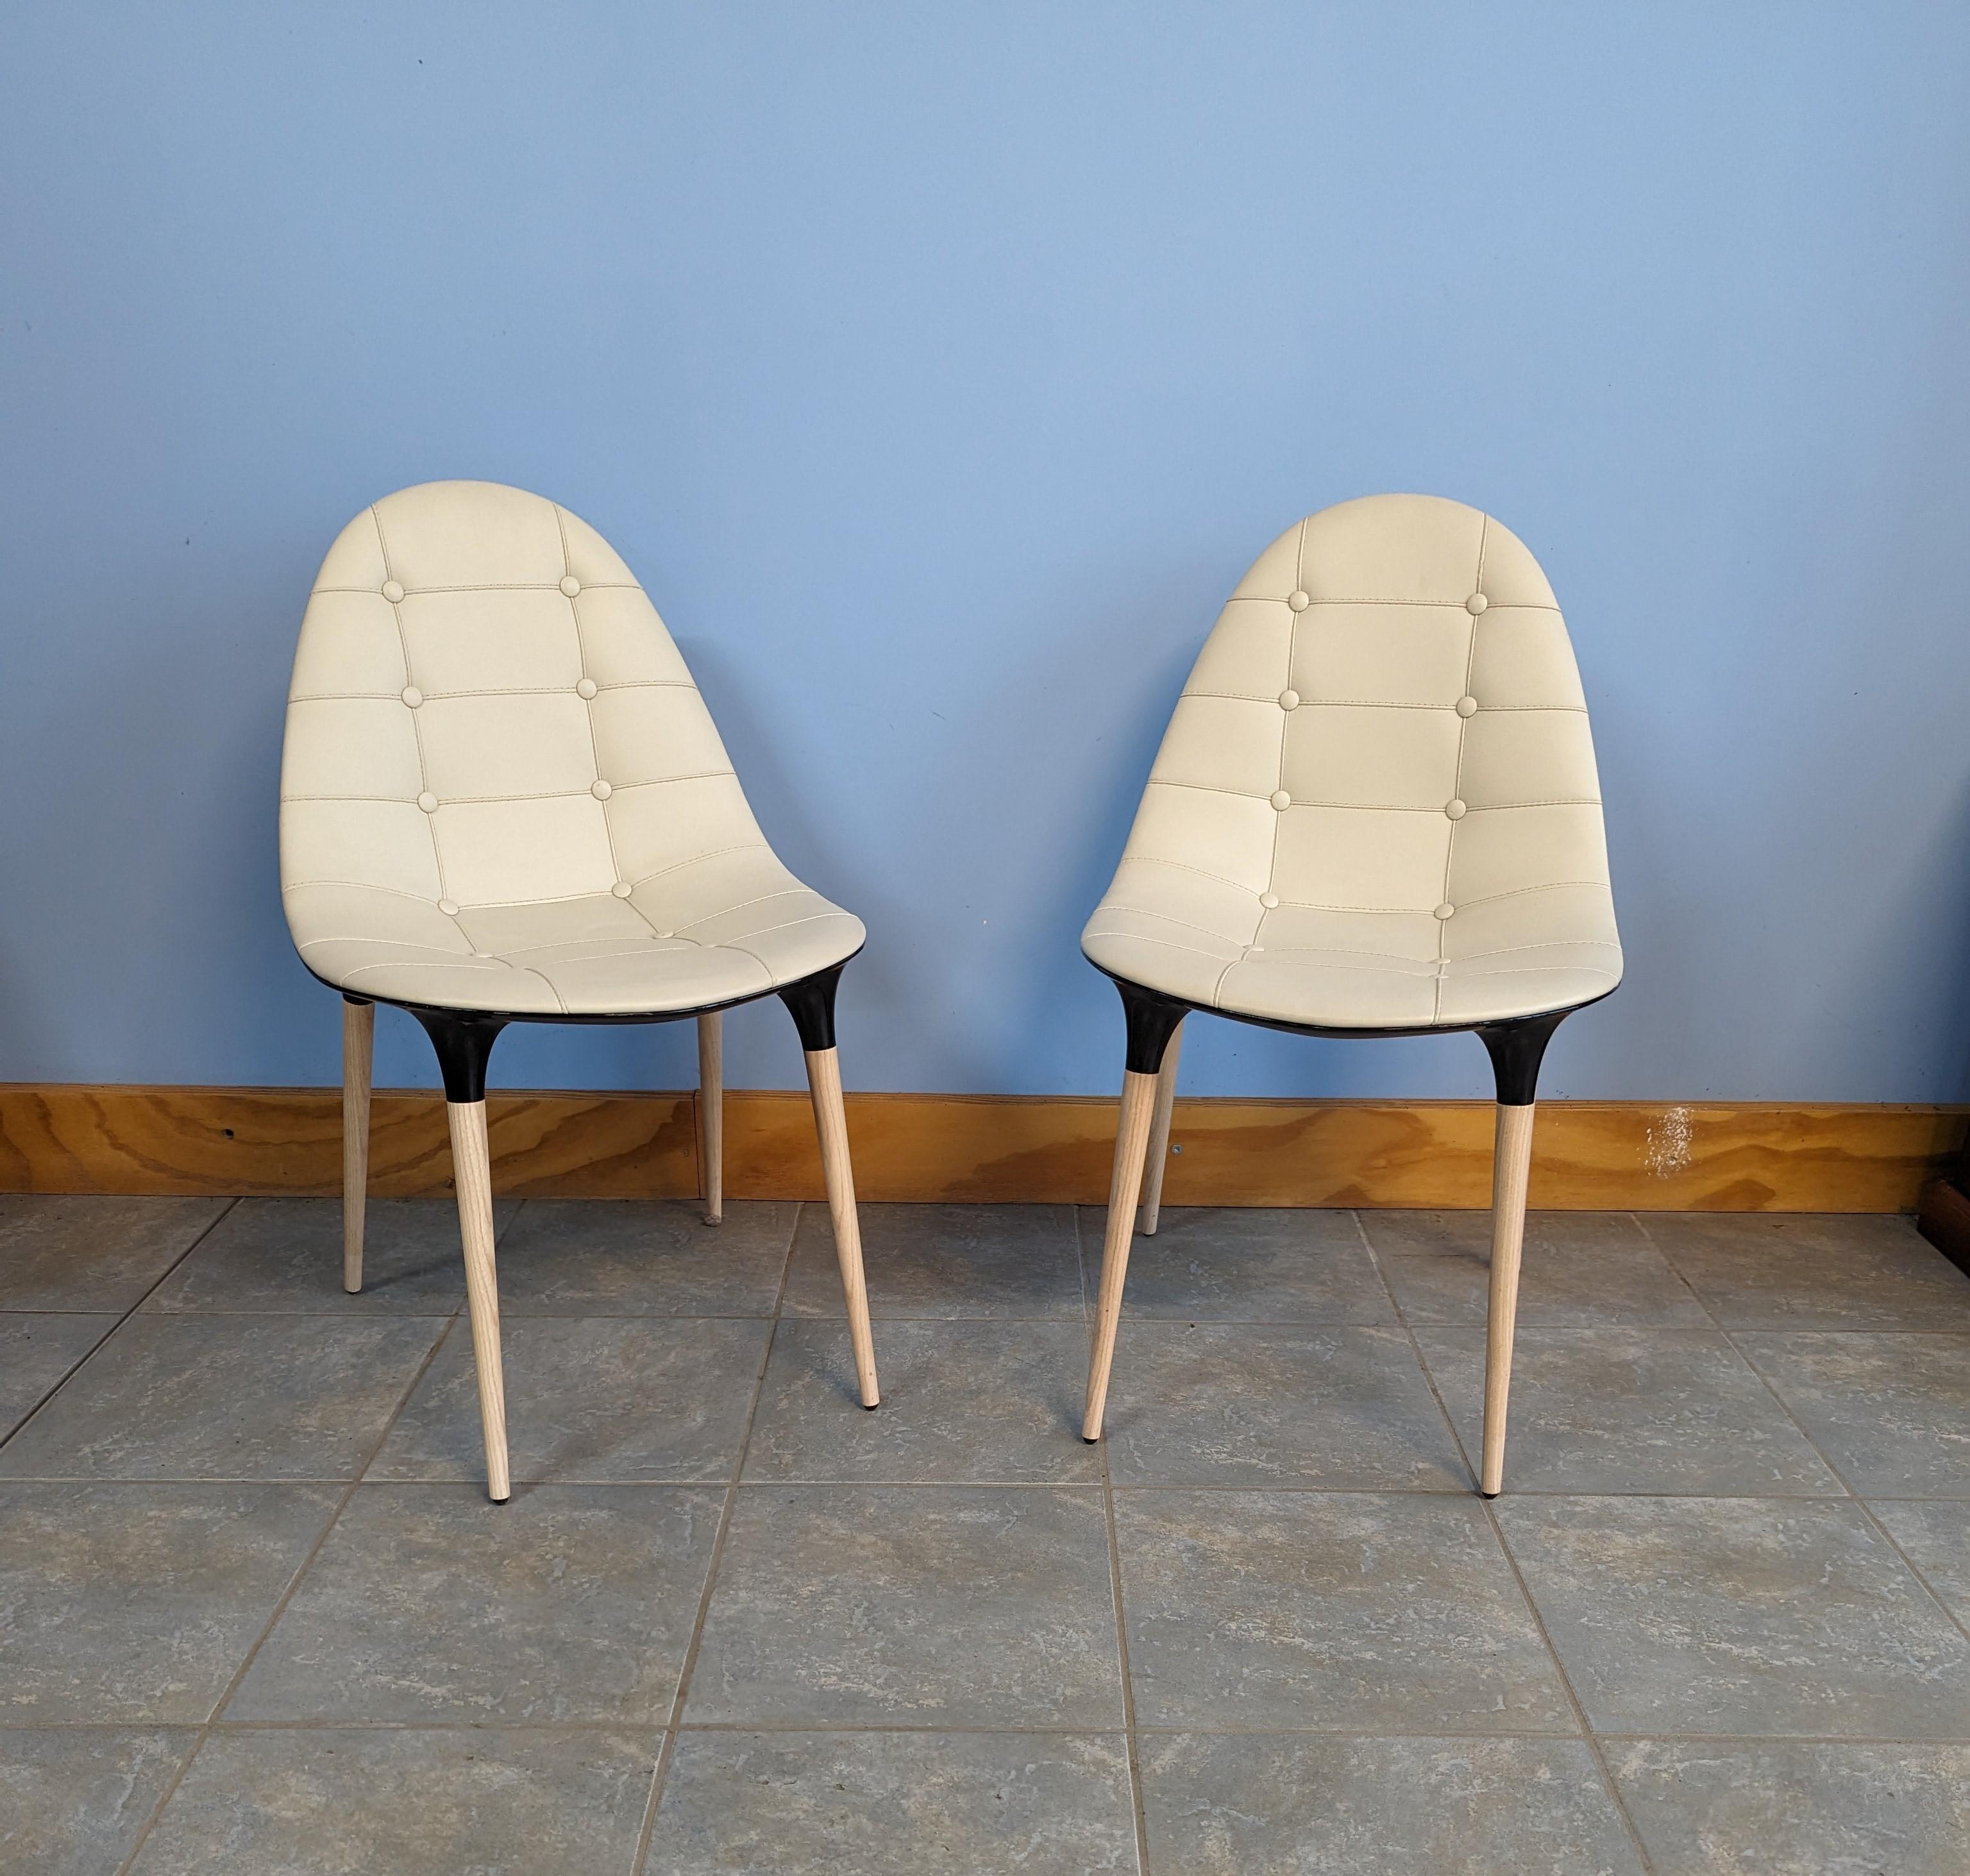 Iconico set composto da due sedie modello